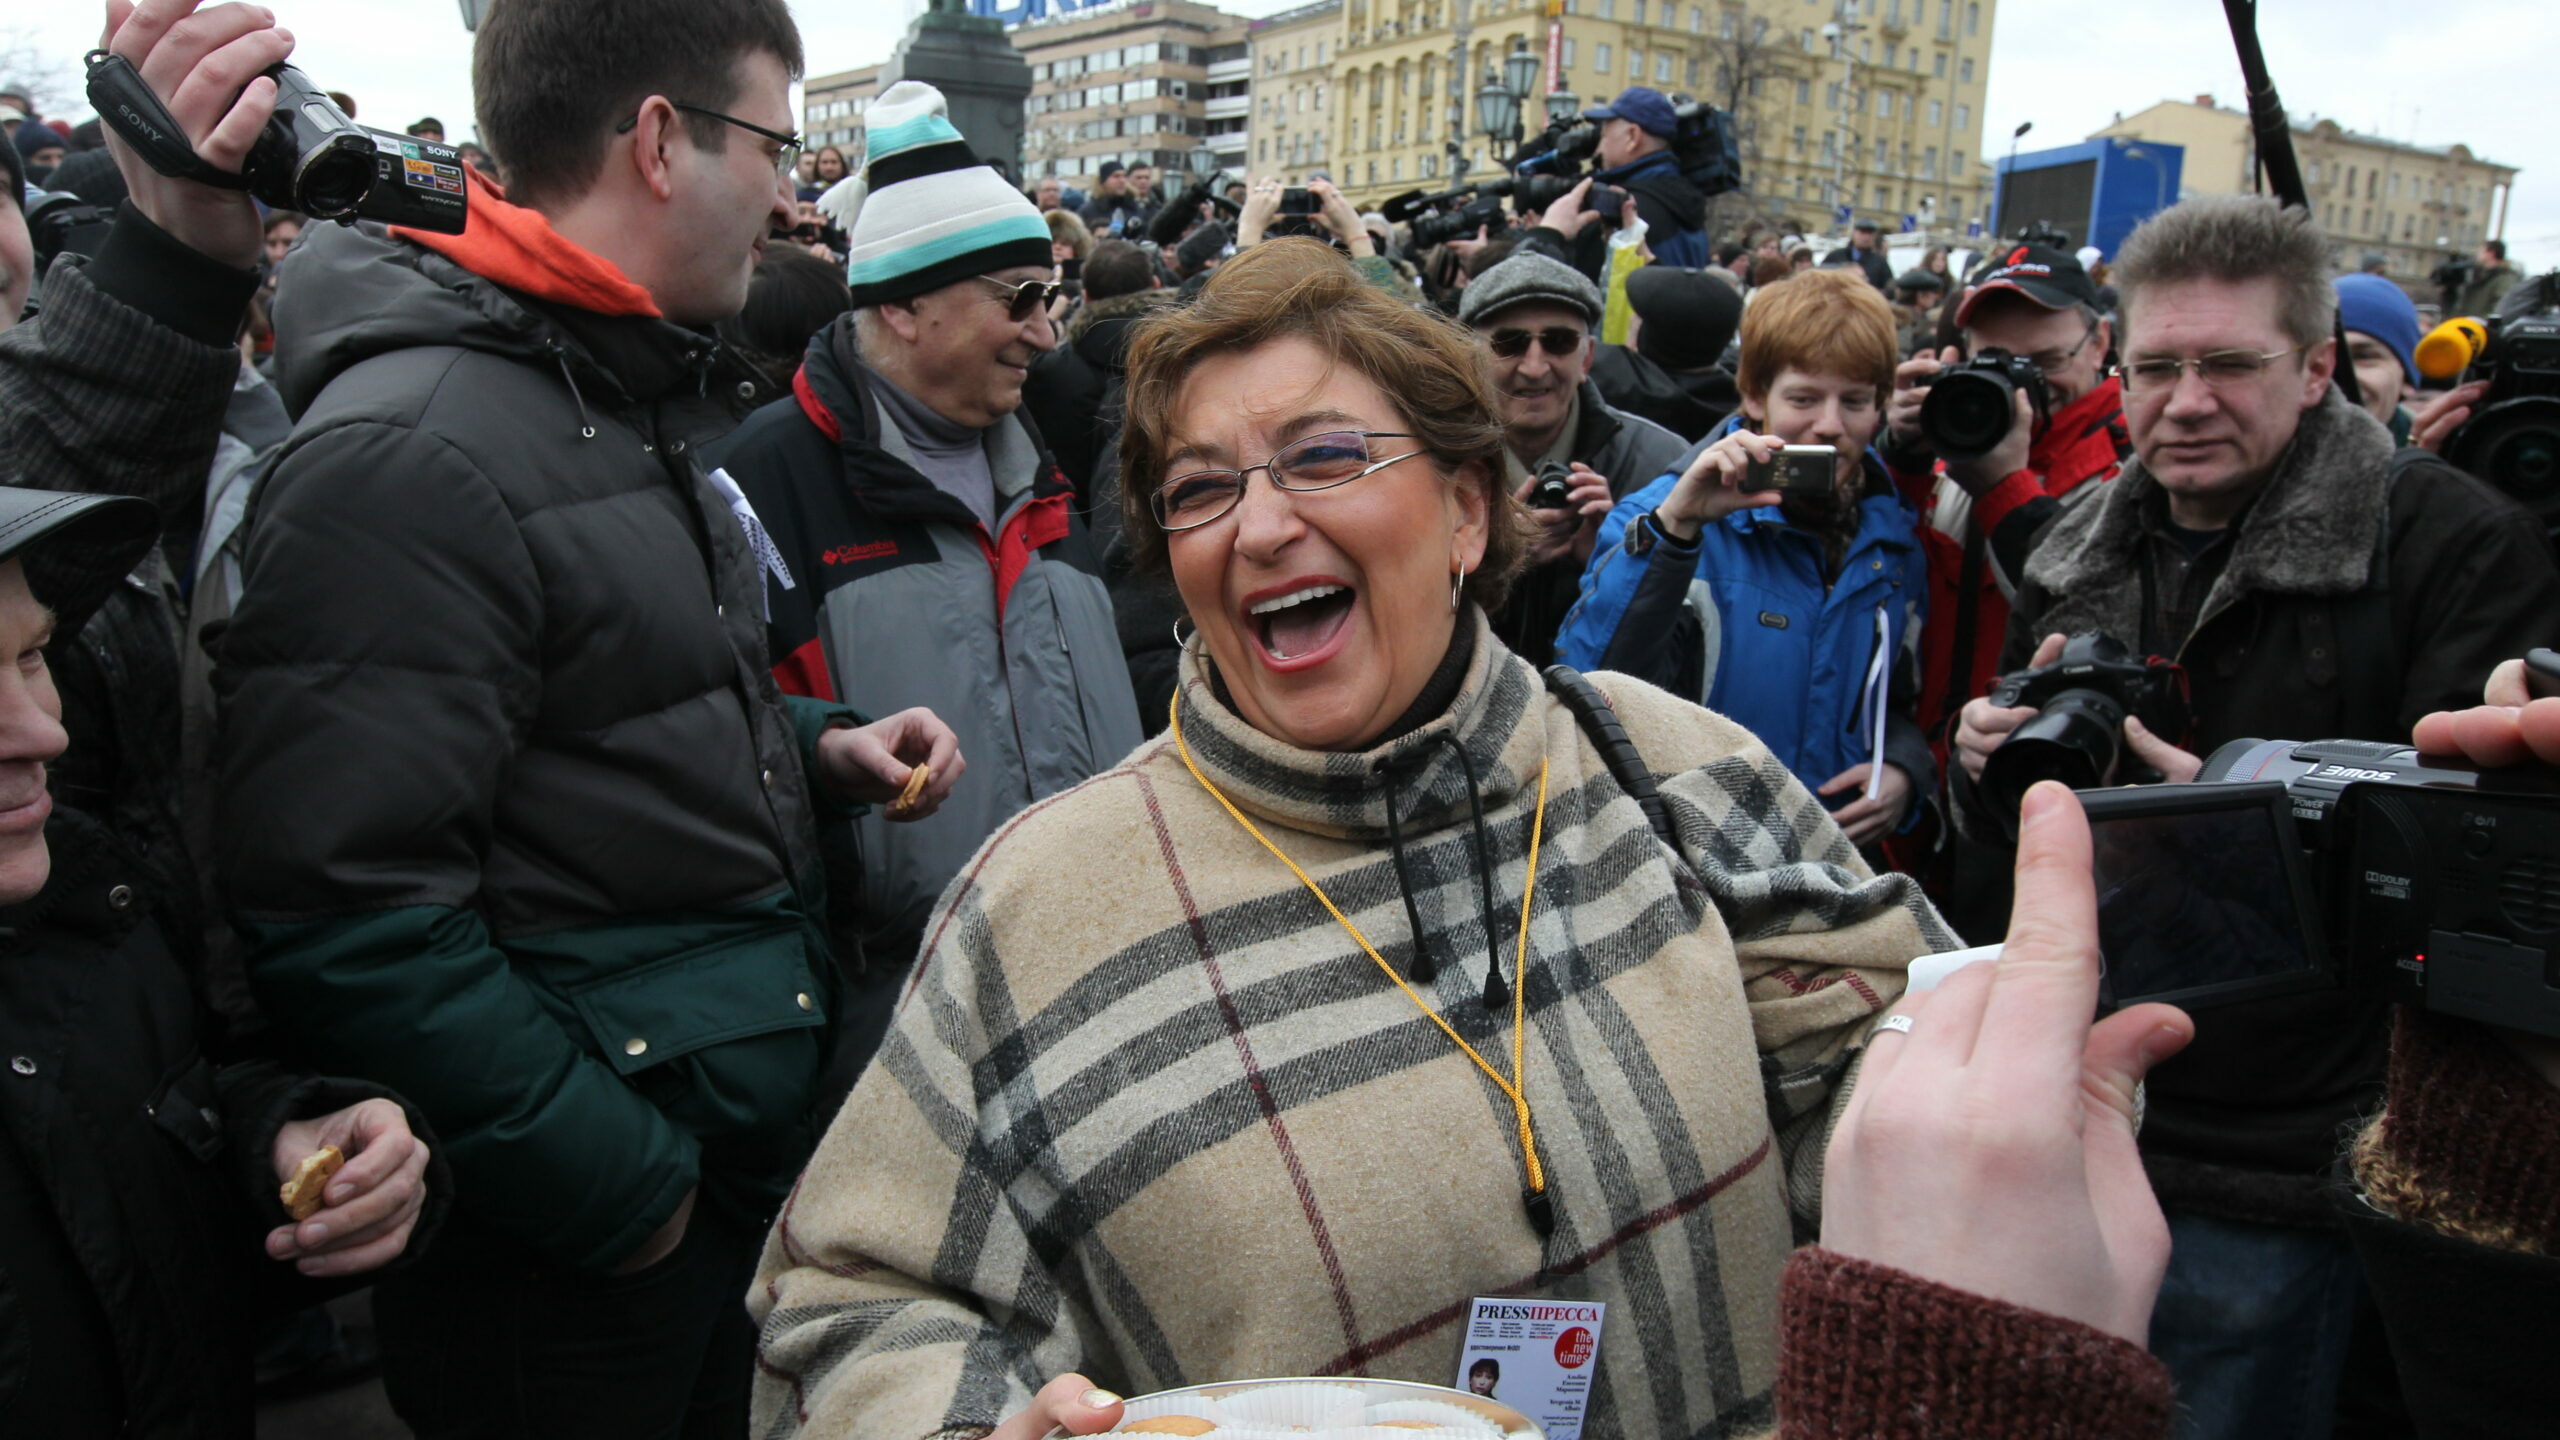 Evgenia Markovna Albats, la decana del periodismo independiente ruso, bromeando con sus colegas en una protesta contra la guerra en la plaza Pushkinskaya de Moscú realizada en marzo. (Sasha Mordovets/Reuters)